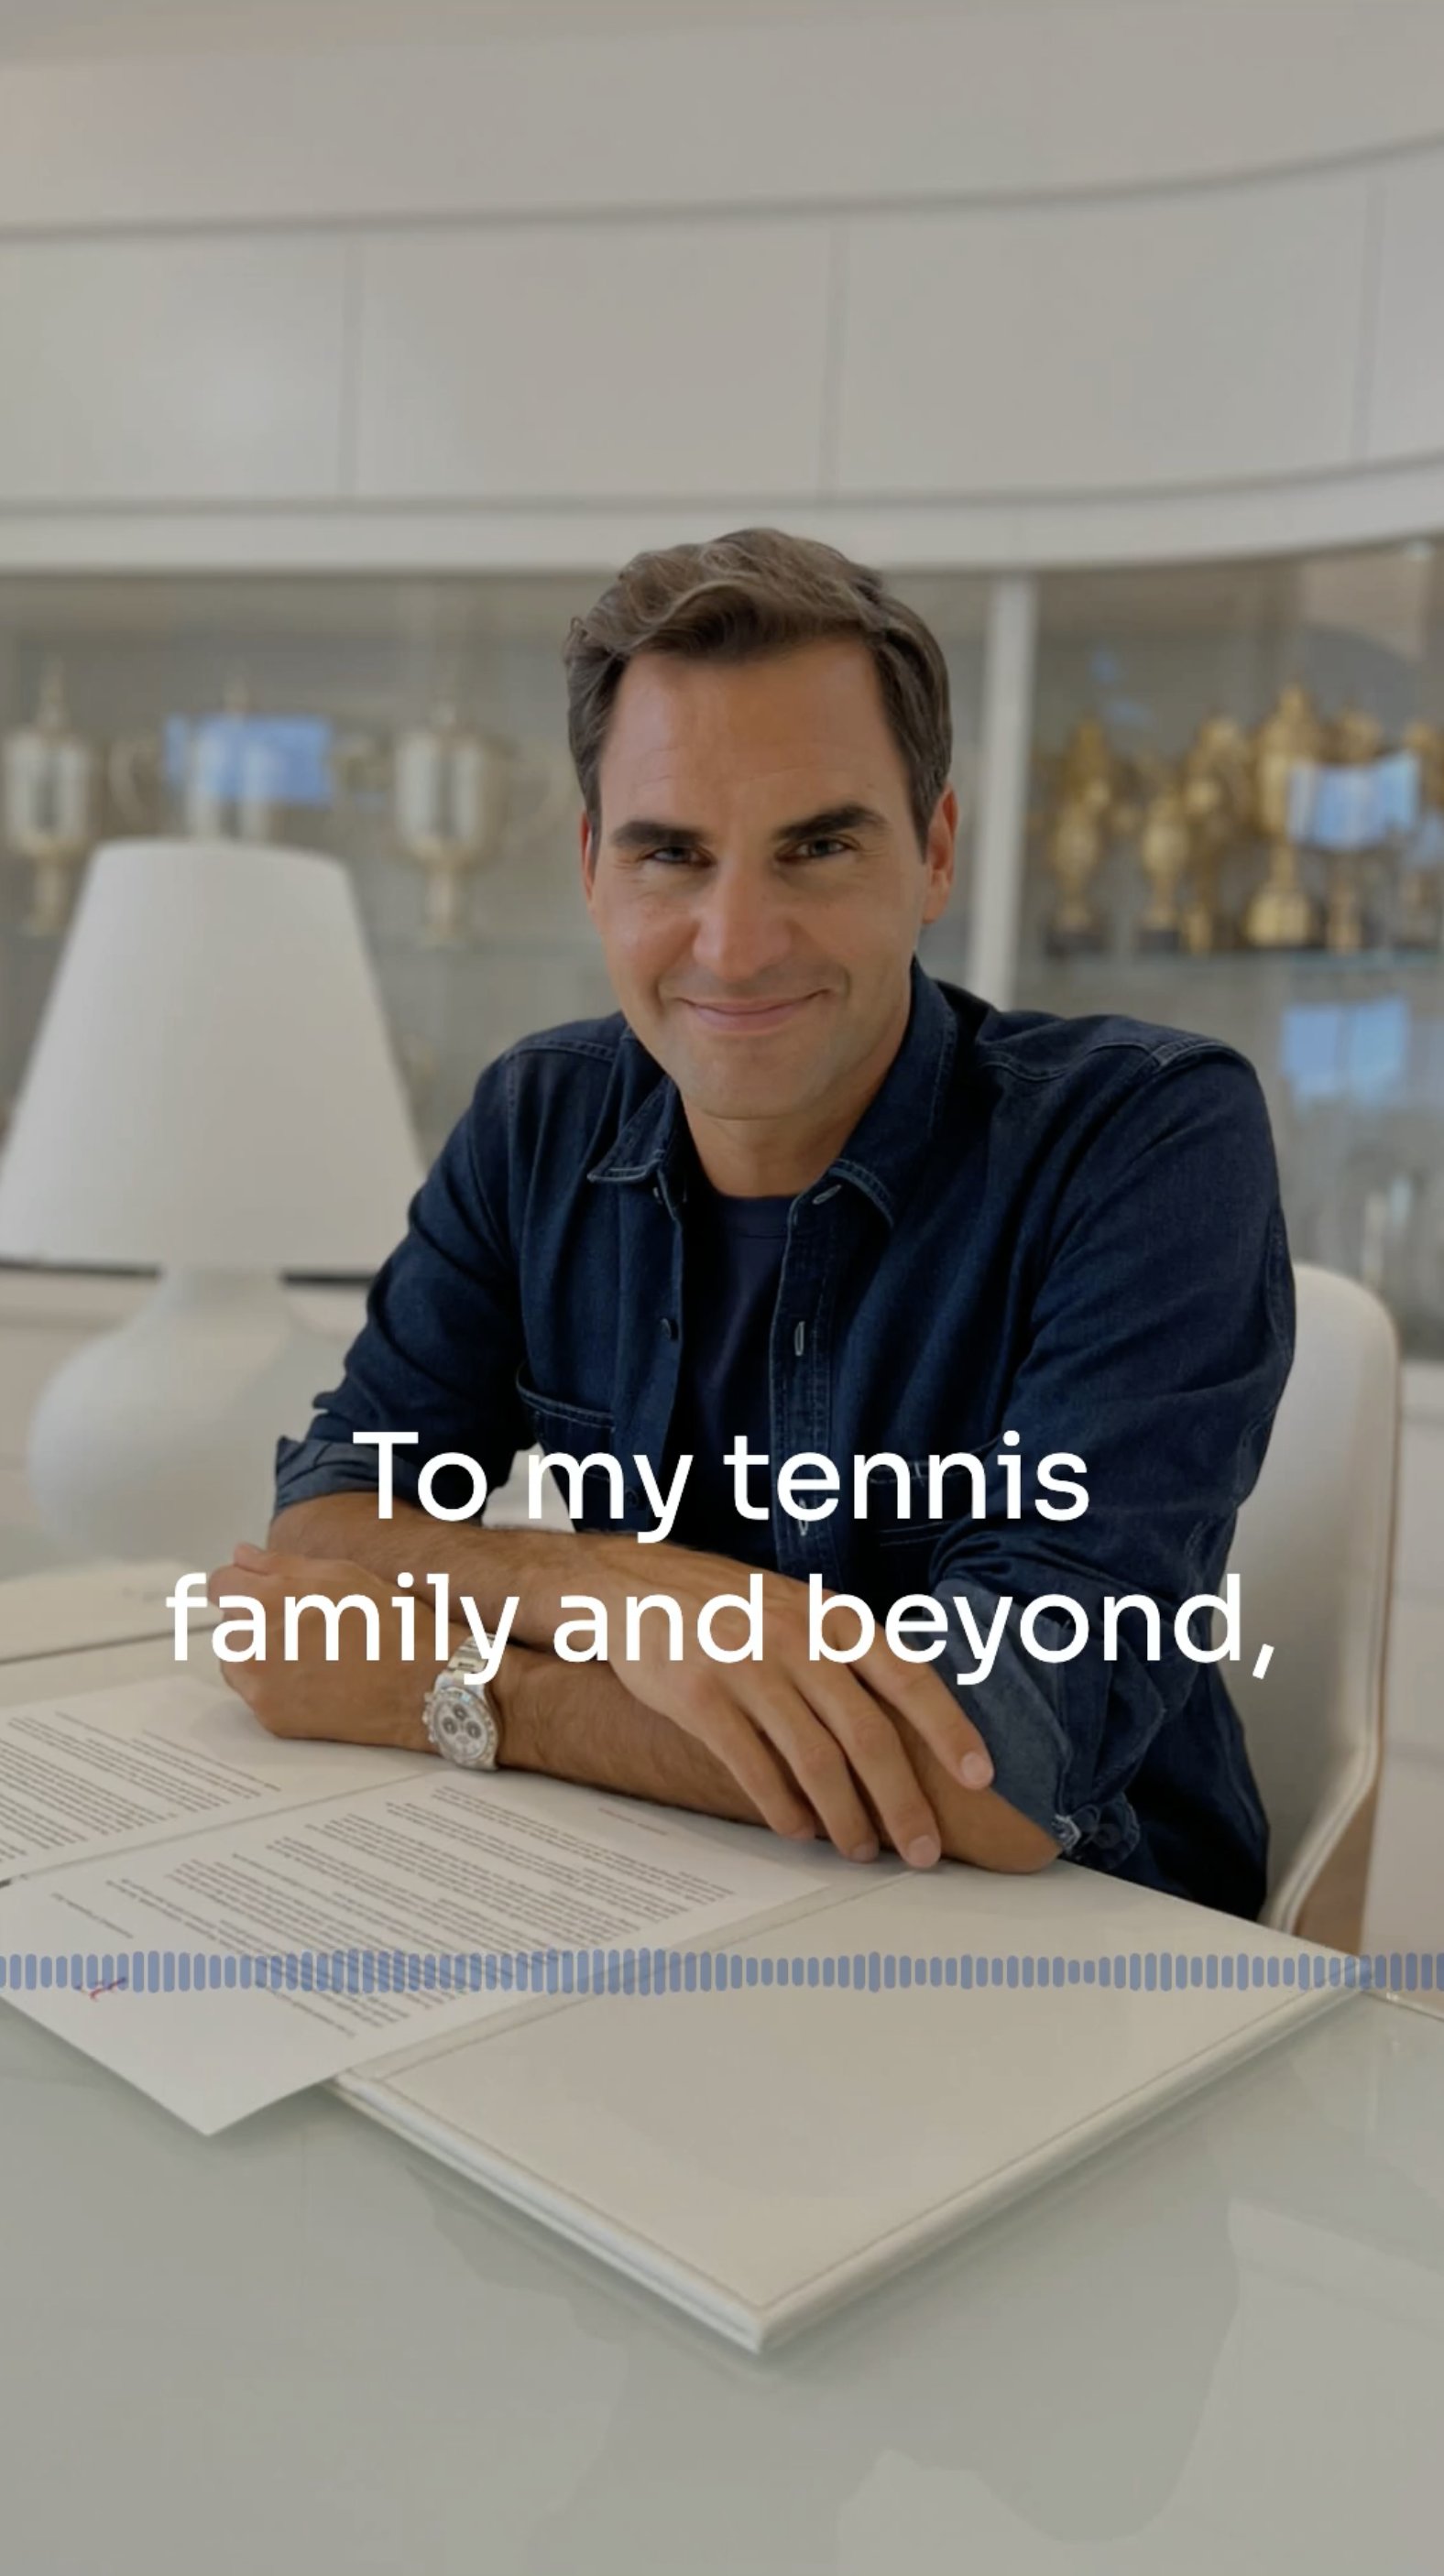 Roger Federer (@rogerfederer) / Twitter